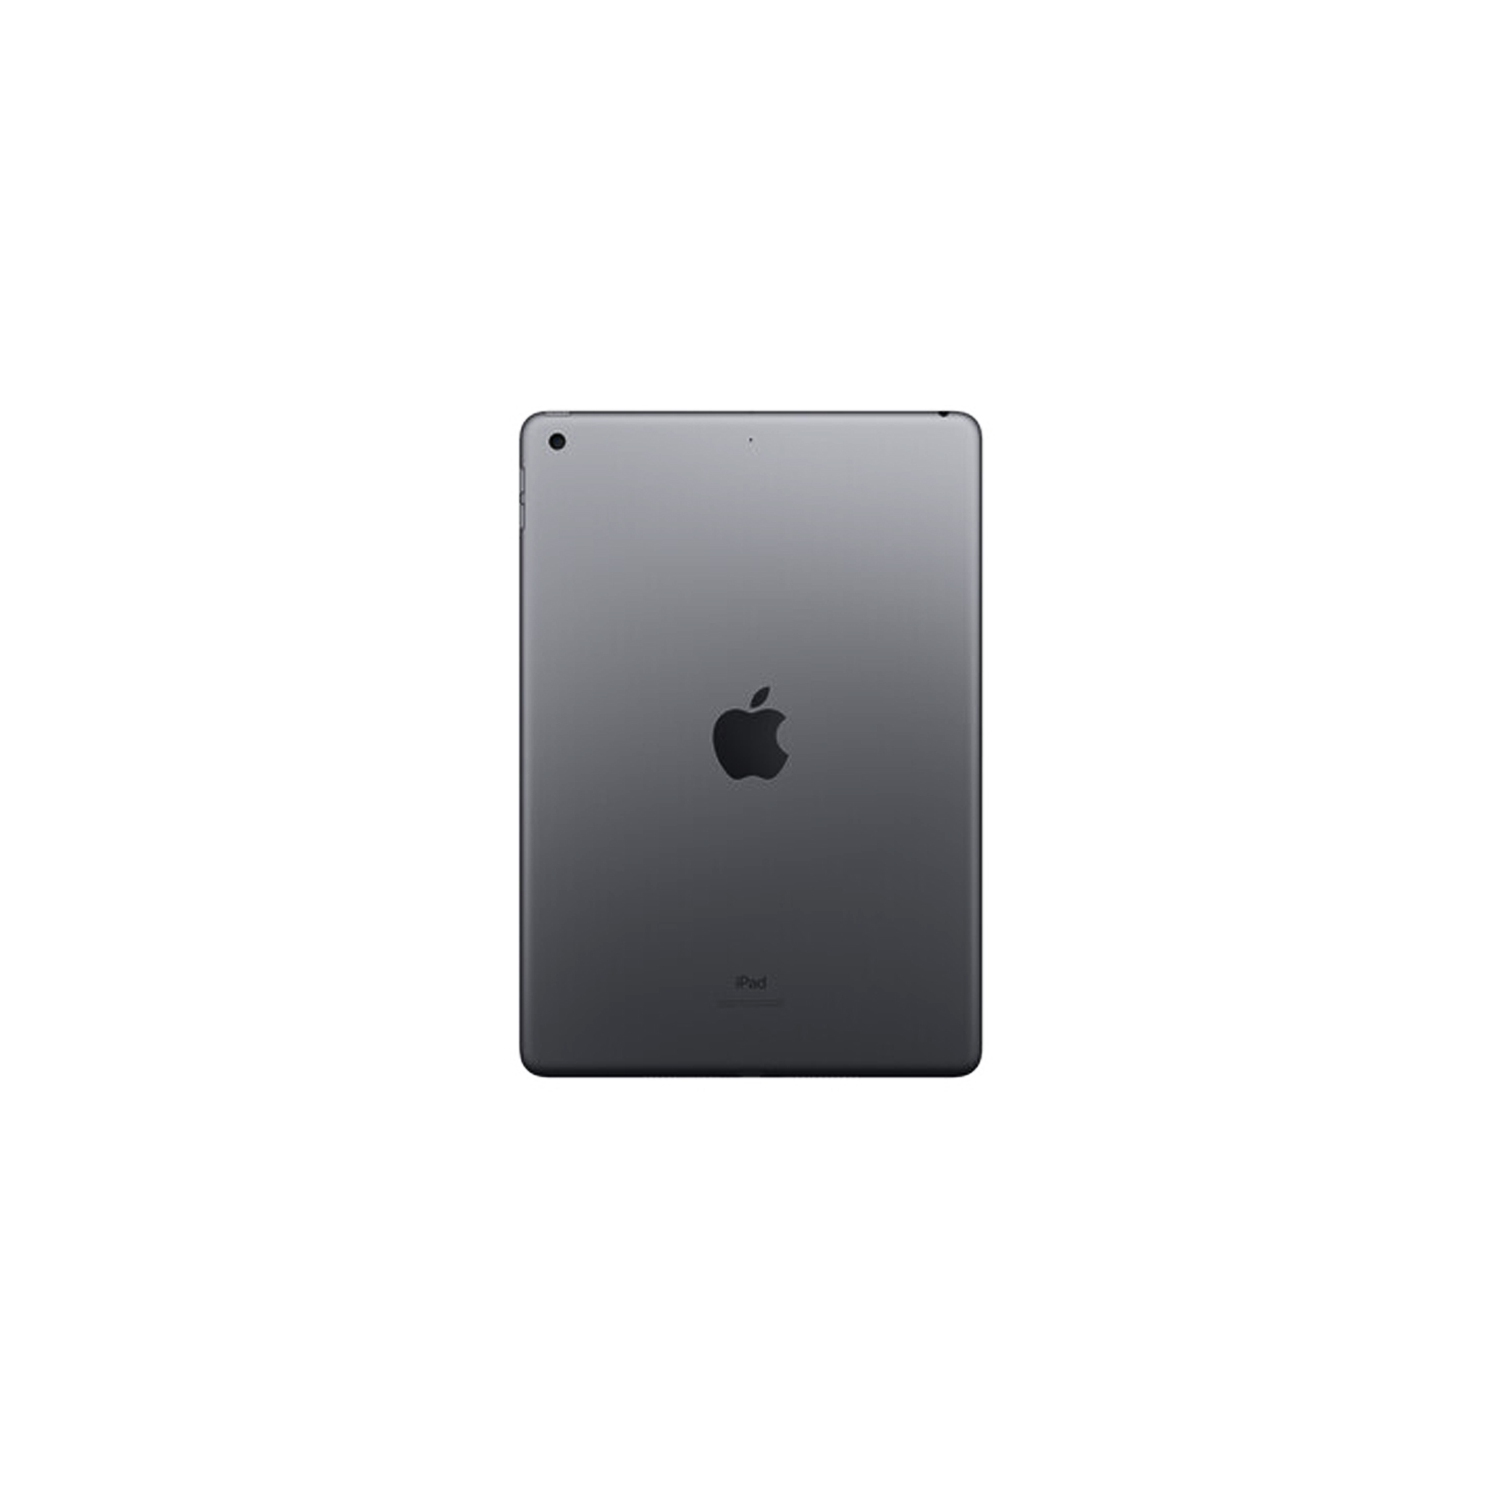 Apple iPad 32GB with Wi-Fi 10.2